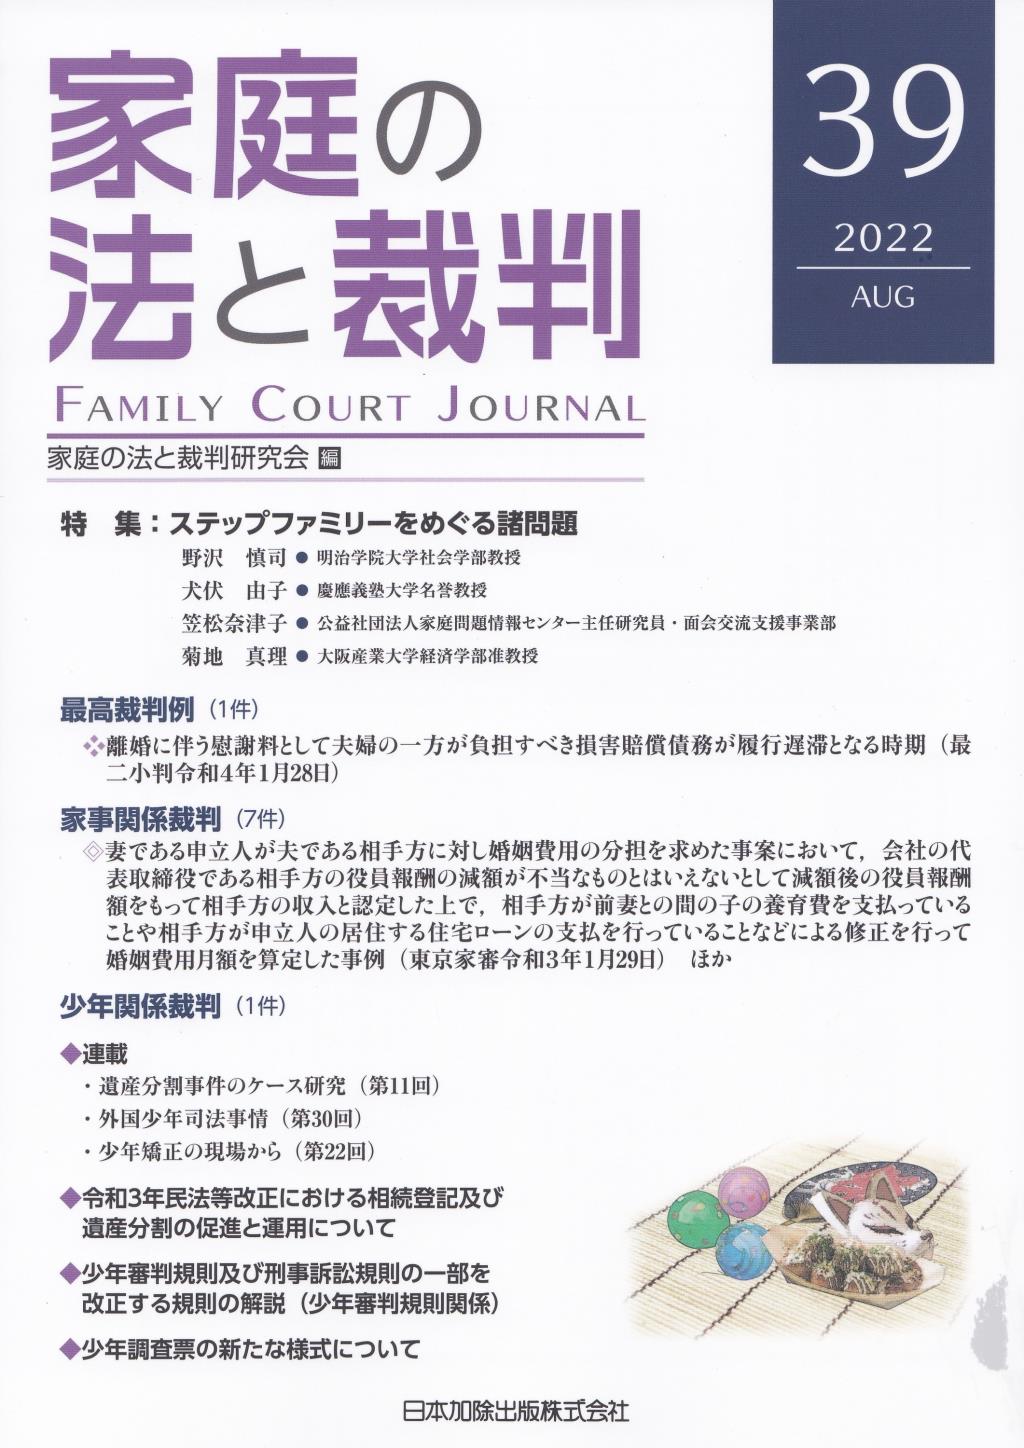 家庭の法と裁判 2022 AUG No.39